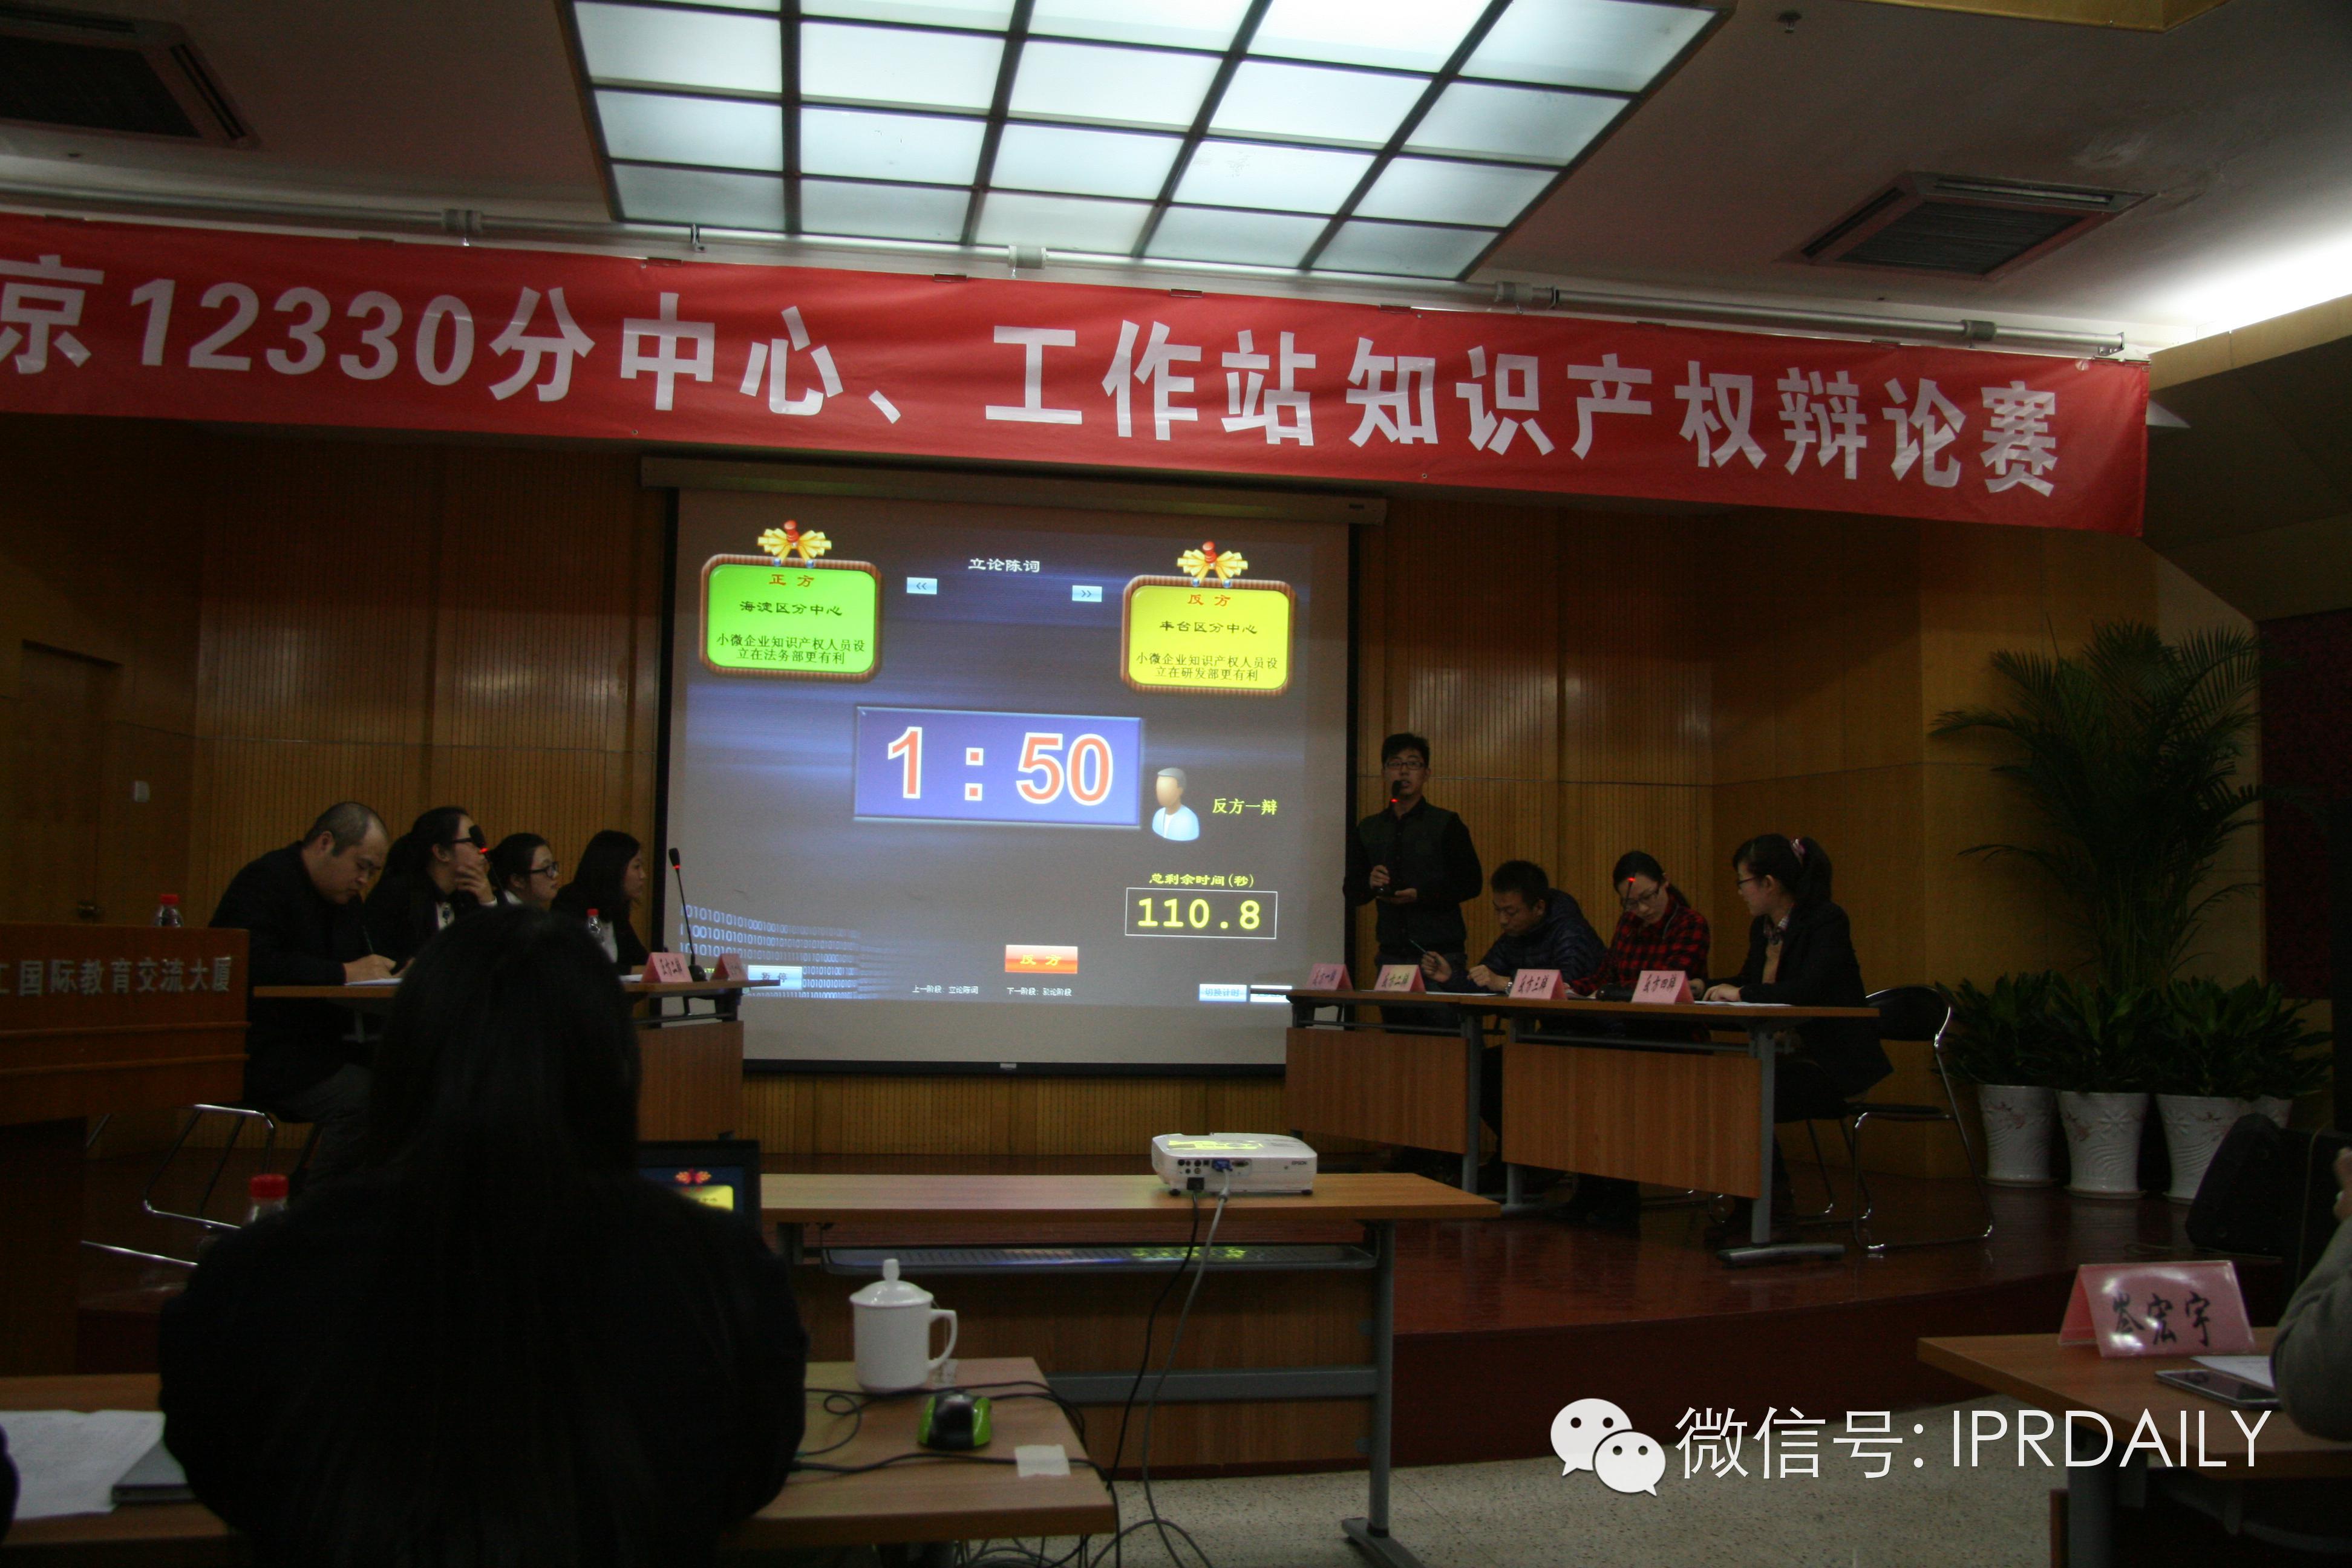 北京12330搭台 中小企业亮相专利周辩论赛